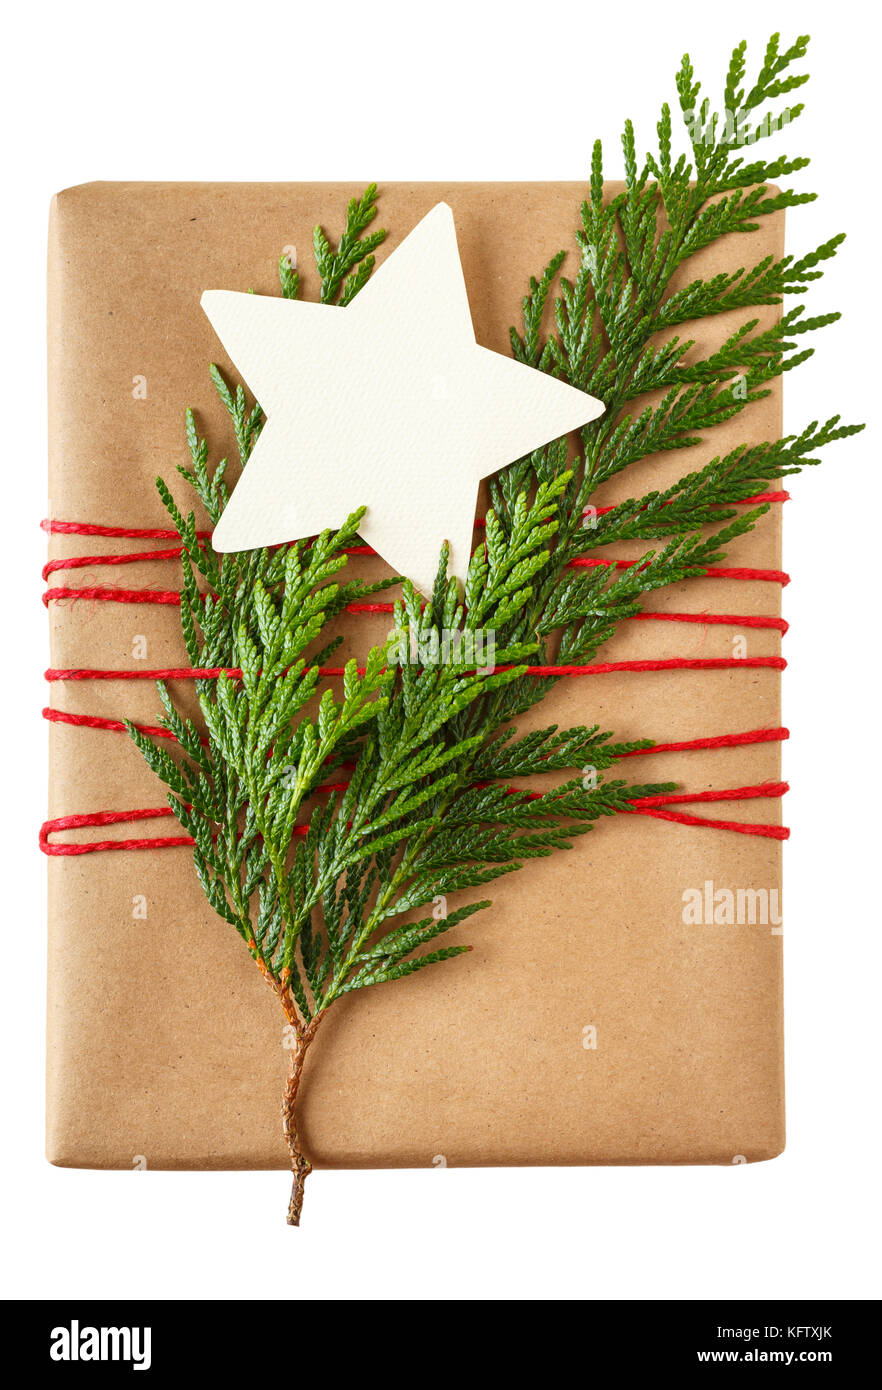 Semplice e rustico regalo di Natale presente con riciclata carta di avvolgimento, naturale evergreen decorazioni e un vuoto tag regalo isolato su sfondo bianco Foto Stock